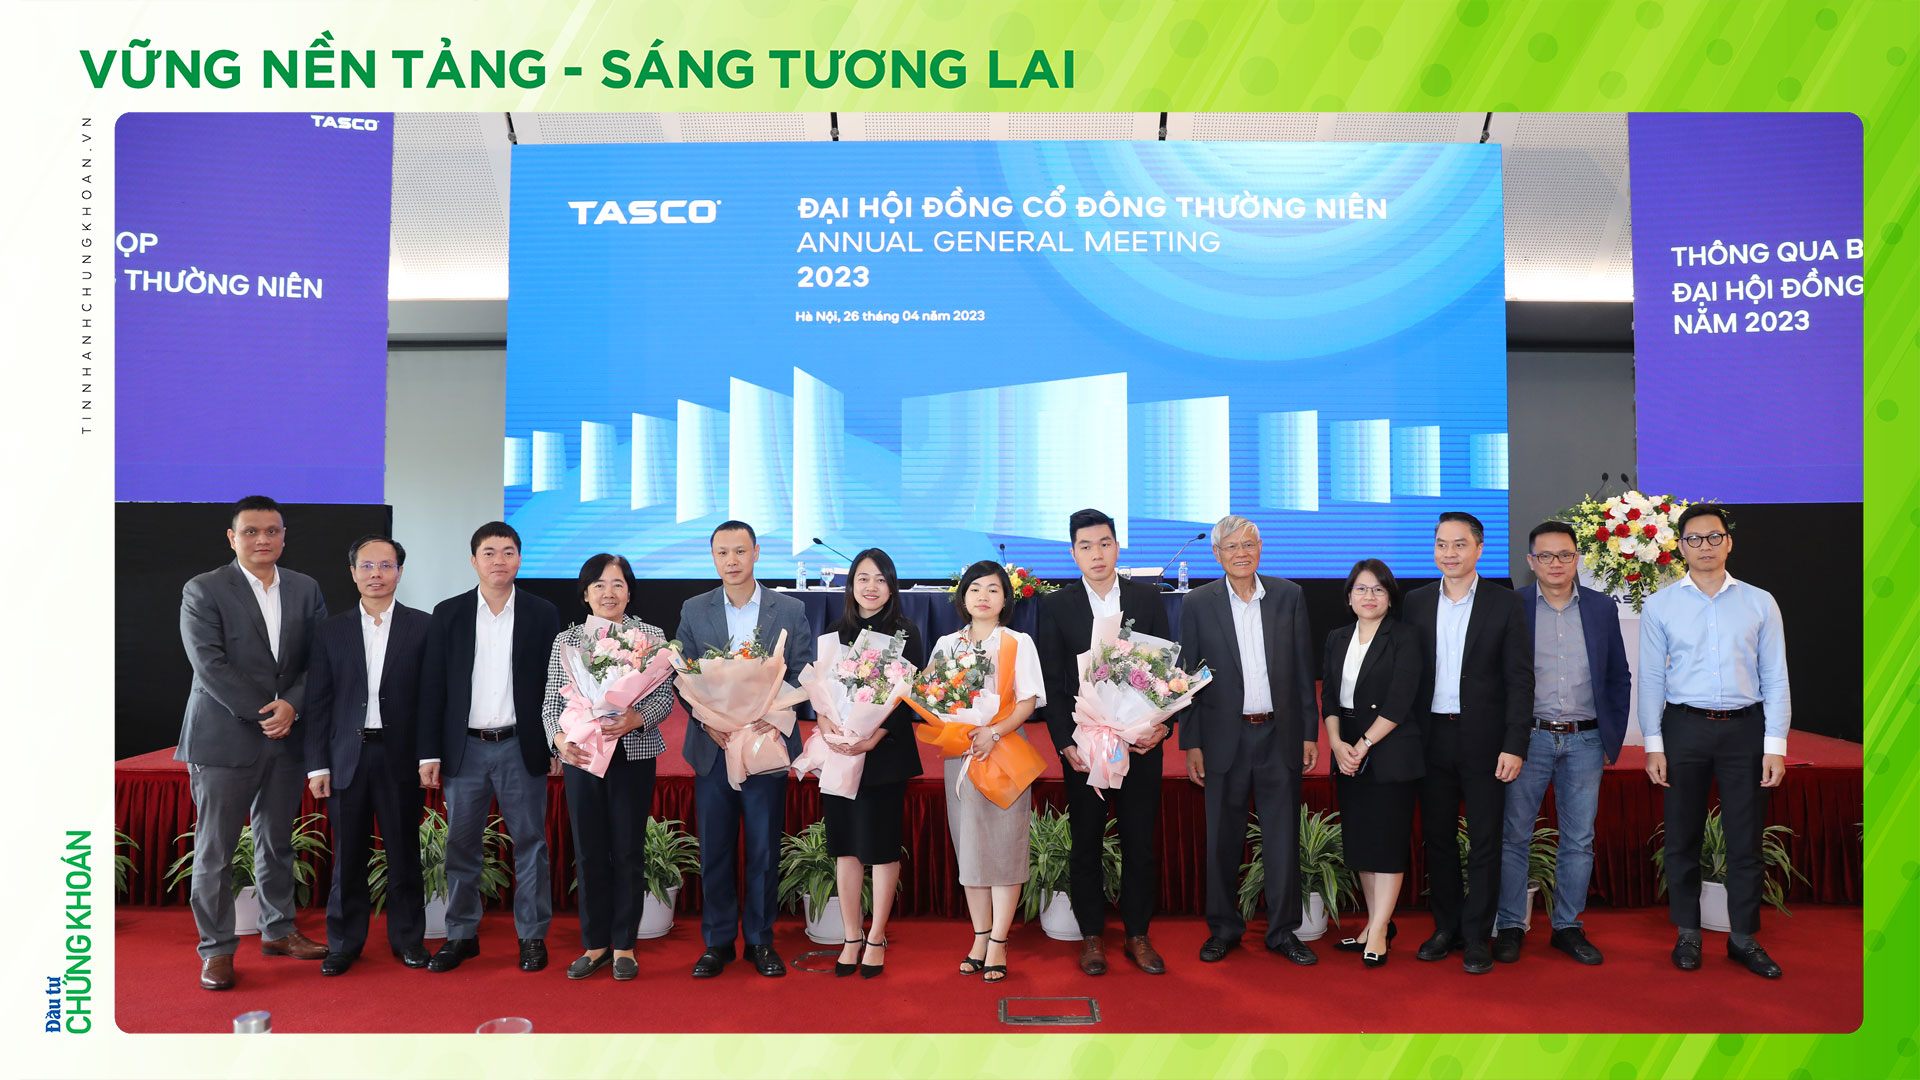 ĐHCĐ Tasco (HUT): Đặt mục tiêu hiện thực hóa tầm nhìn trở thành “Sự lựa chọn số 1 của người Việt Nam về dịch vụ ô tô và hạ tầng giao thông thông minh”